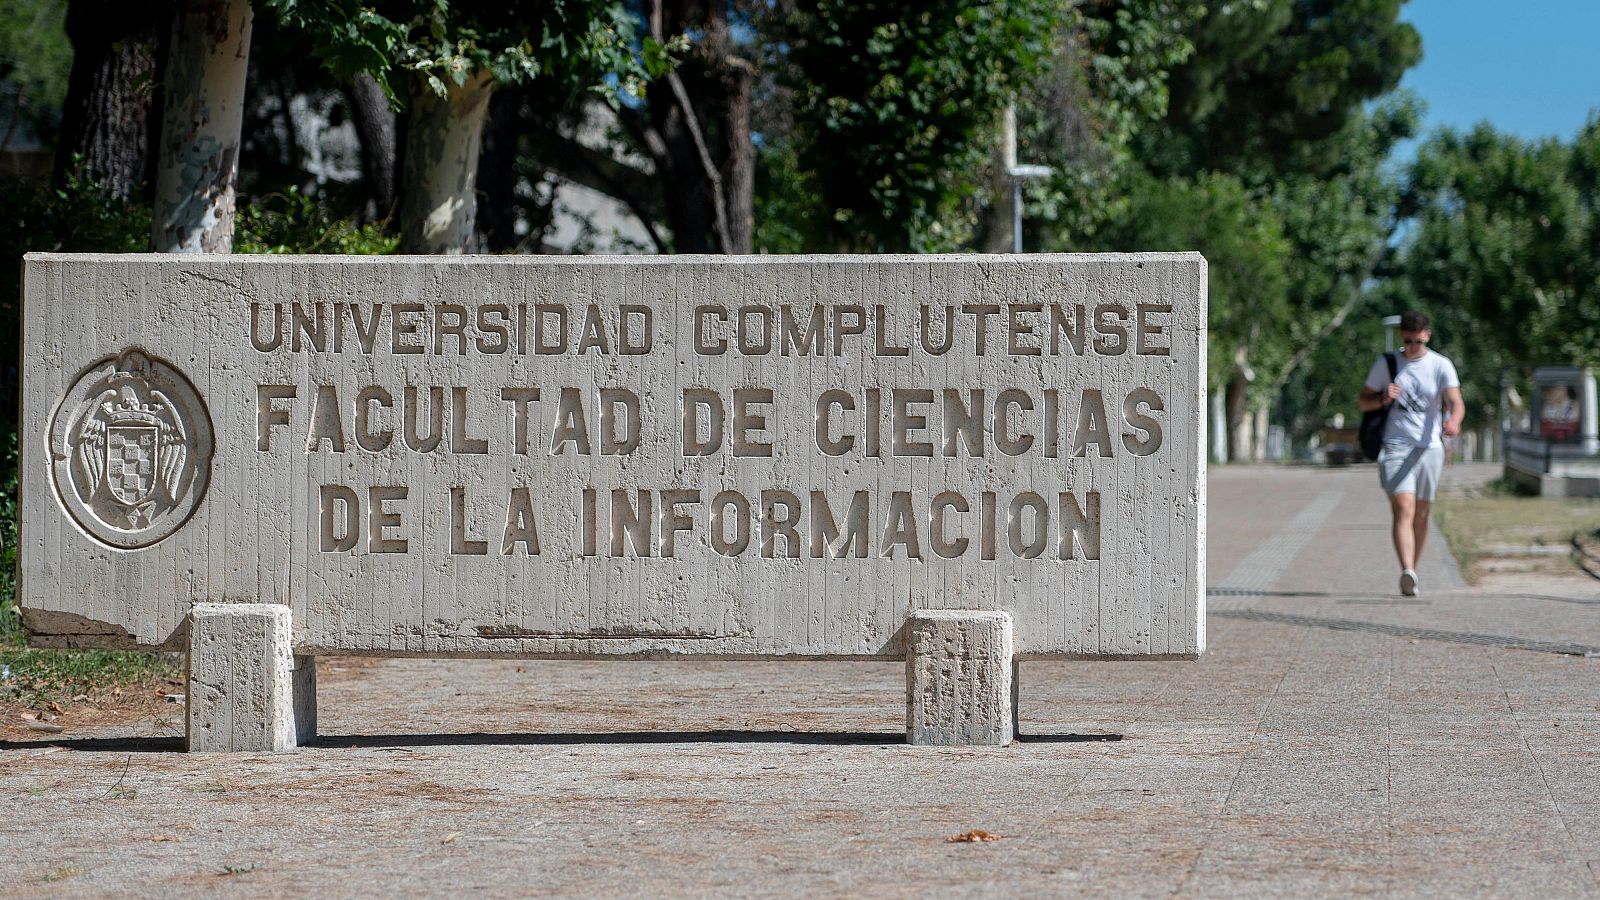 La Universidad Complutense sufre un ciberataque que podría haber expuesto los datos de alumnos